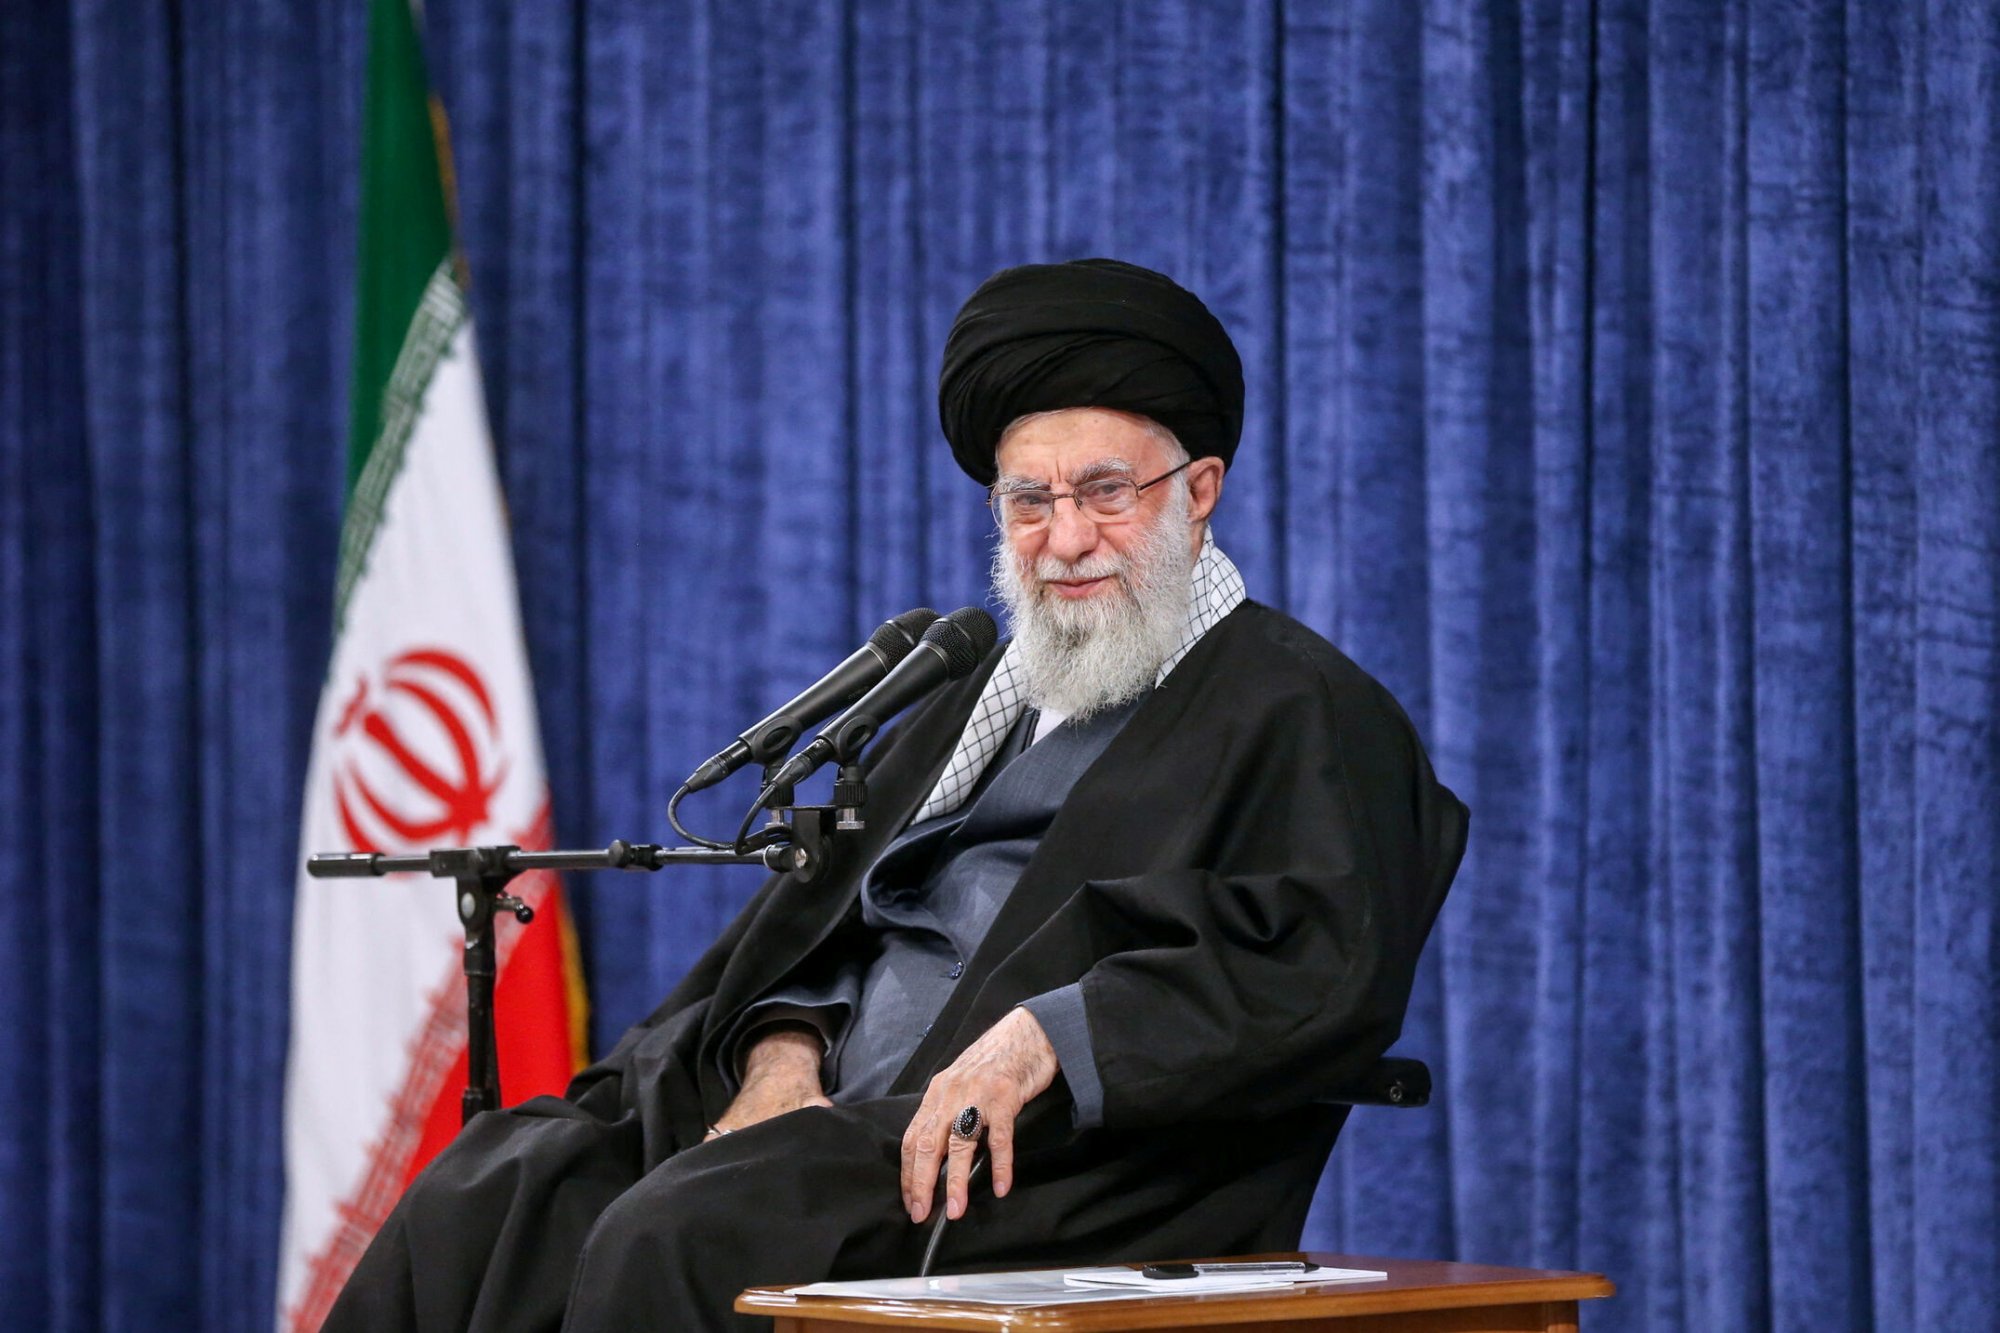 Μήνυμα Χαμενεΐ μετά την έναρξη της επίθεσης του Ιράν στο Ισραήλ - «Το καθεστώς των σιωνιστών θα τιμωρηθεί»